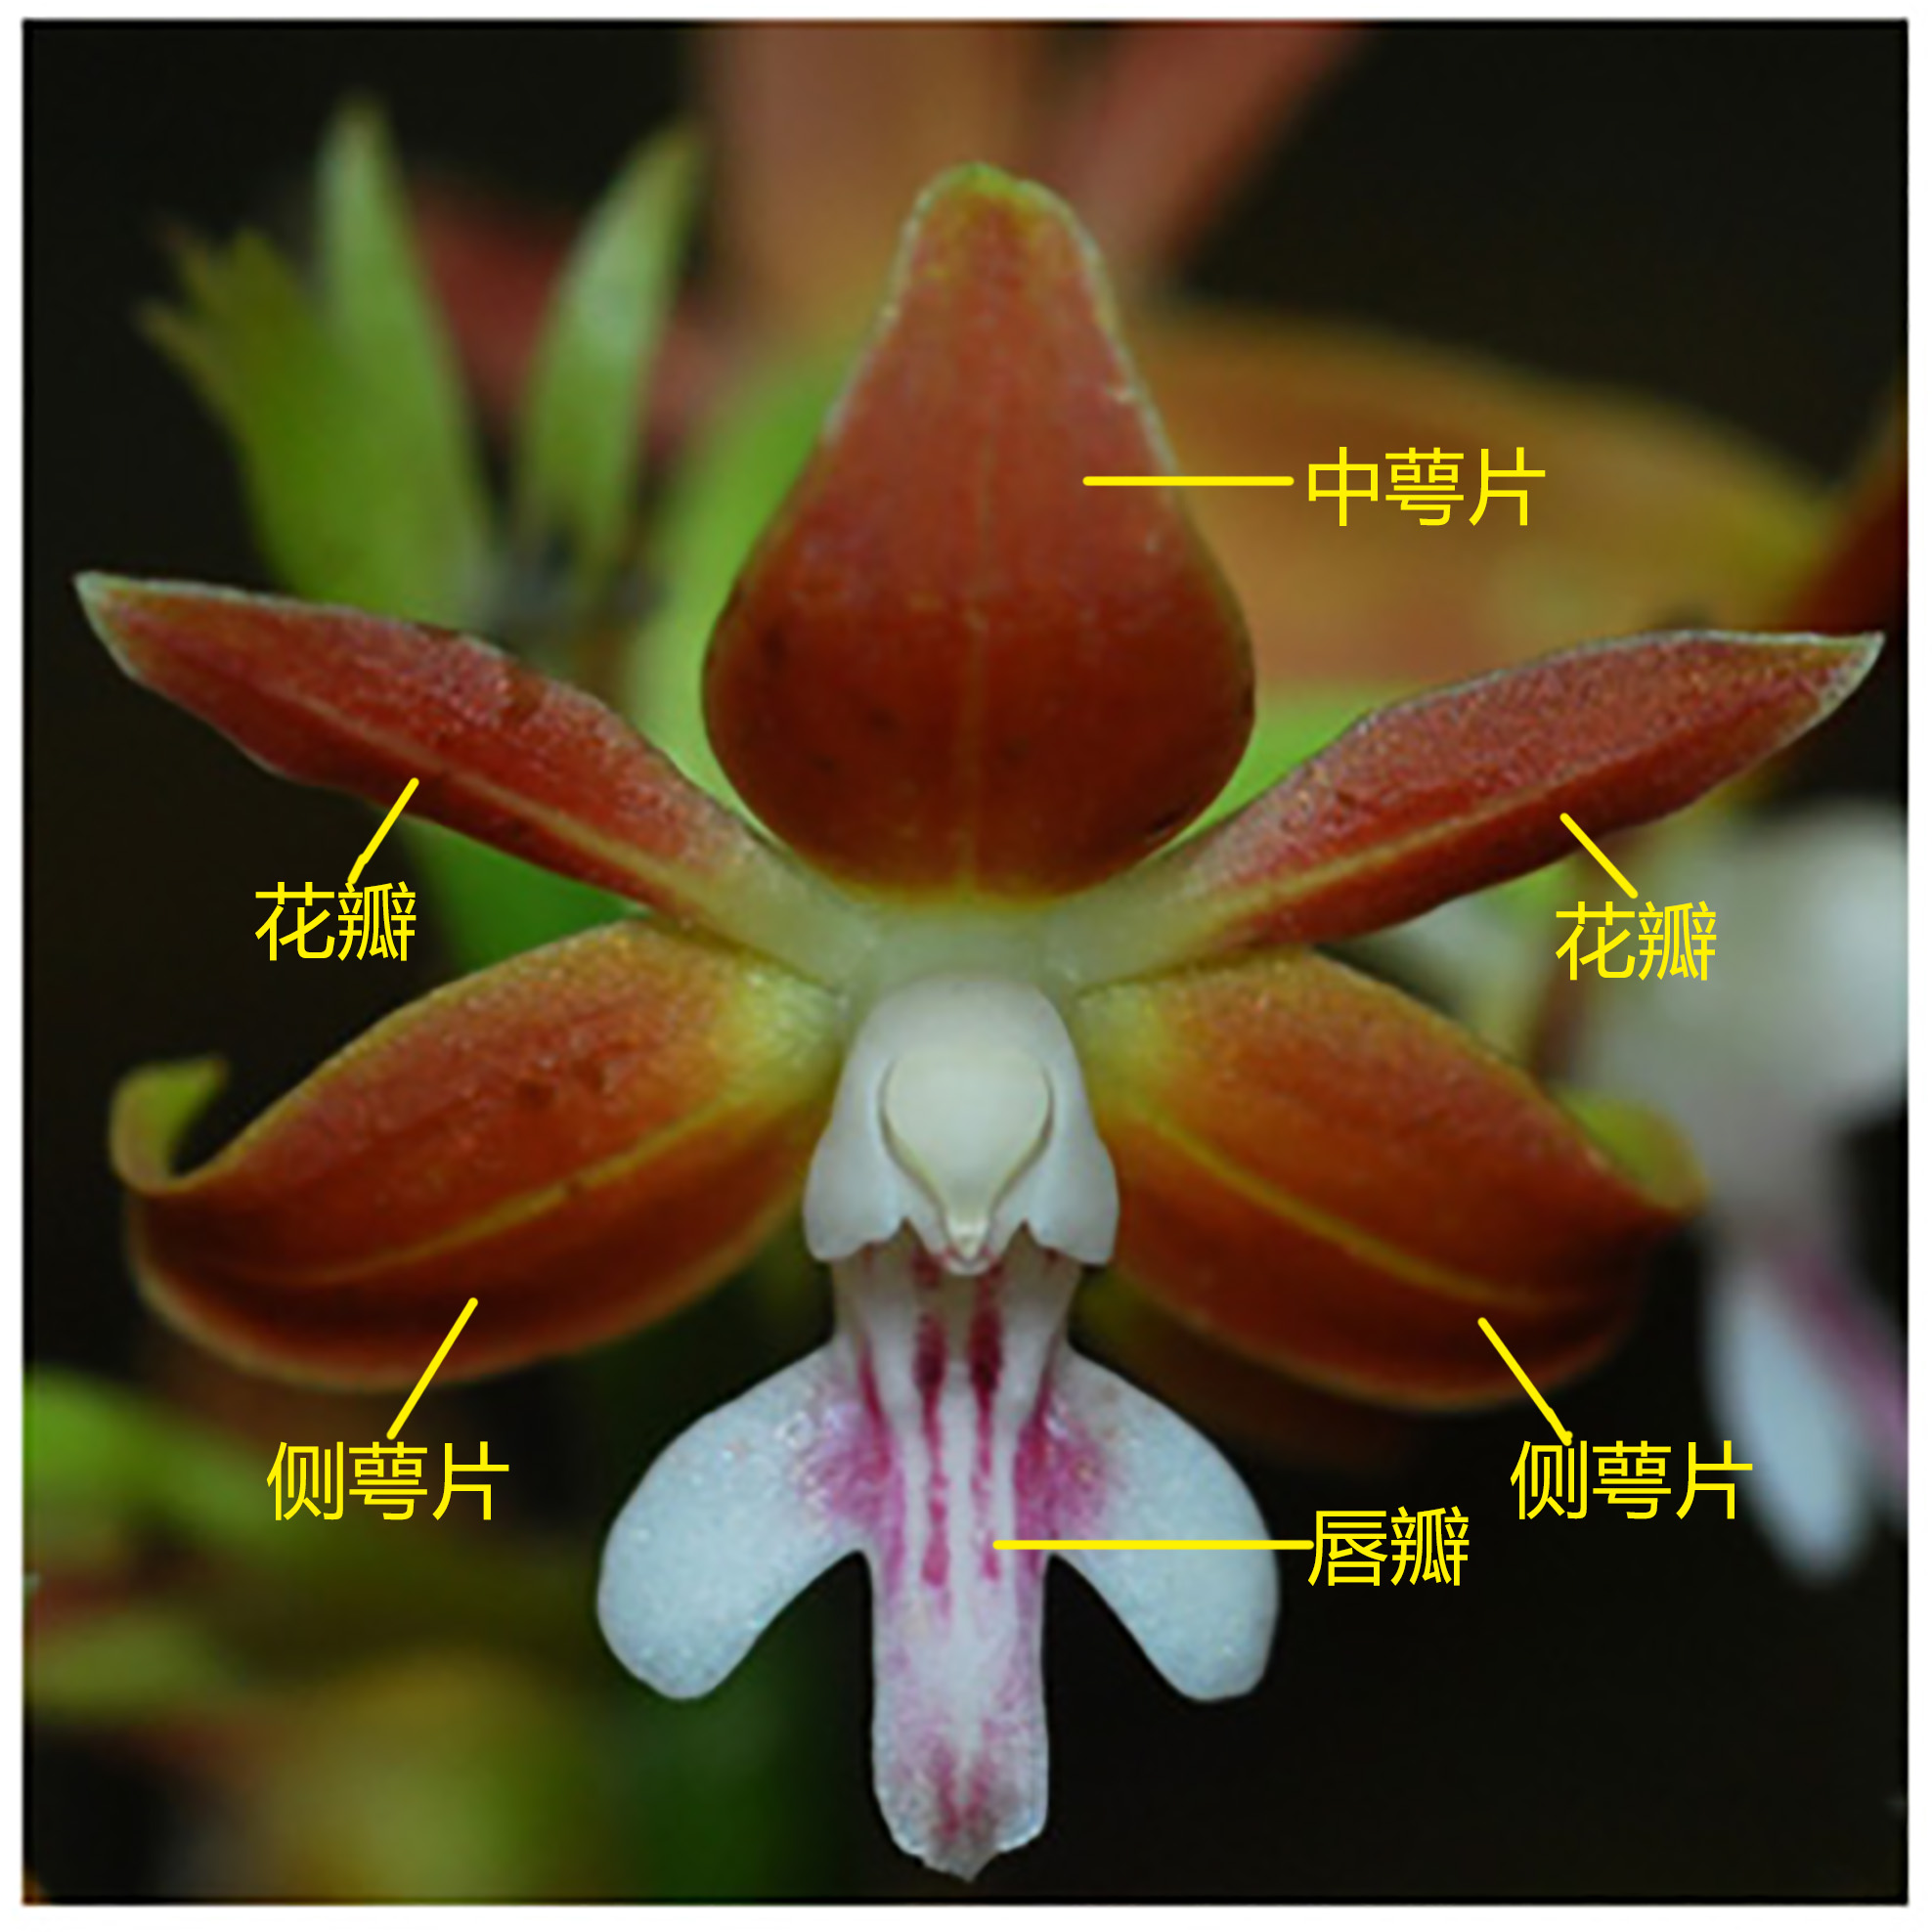 雌雄蕊合生的合蕊柱兰花不像其它植物的花朵具有单独的雄蕊和雌蕊